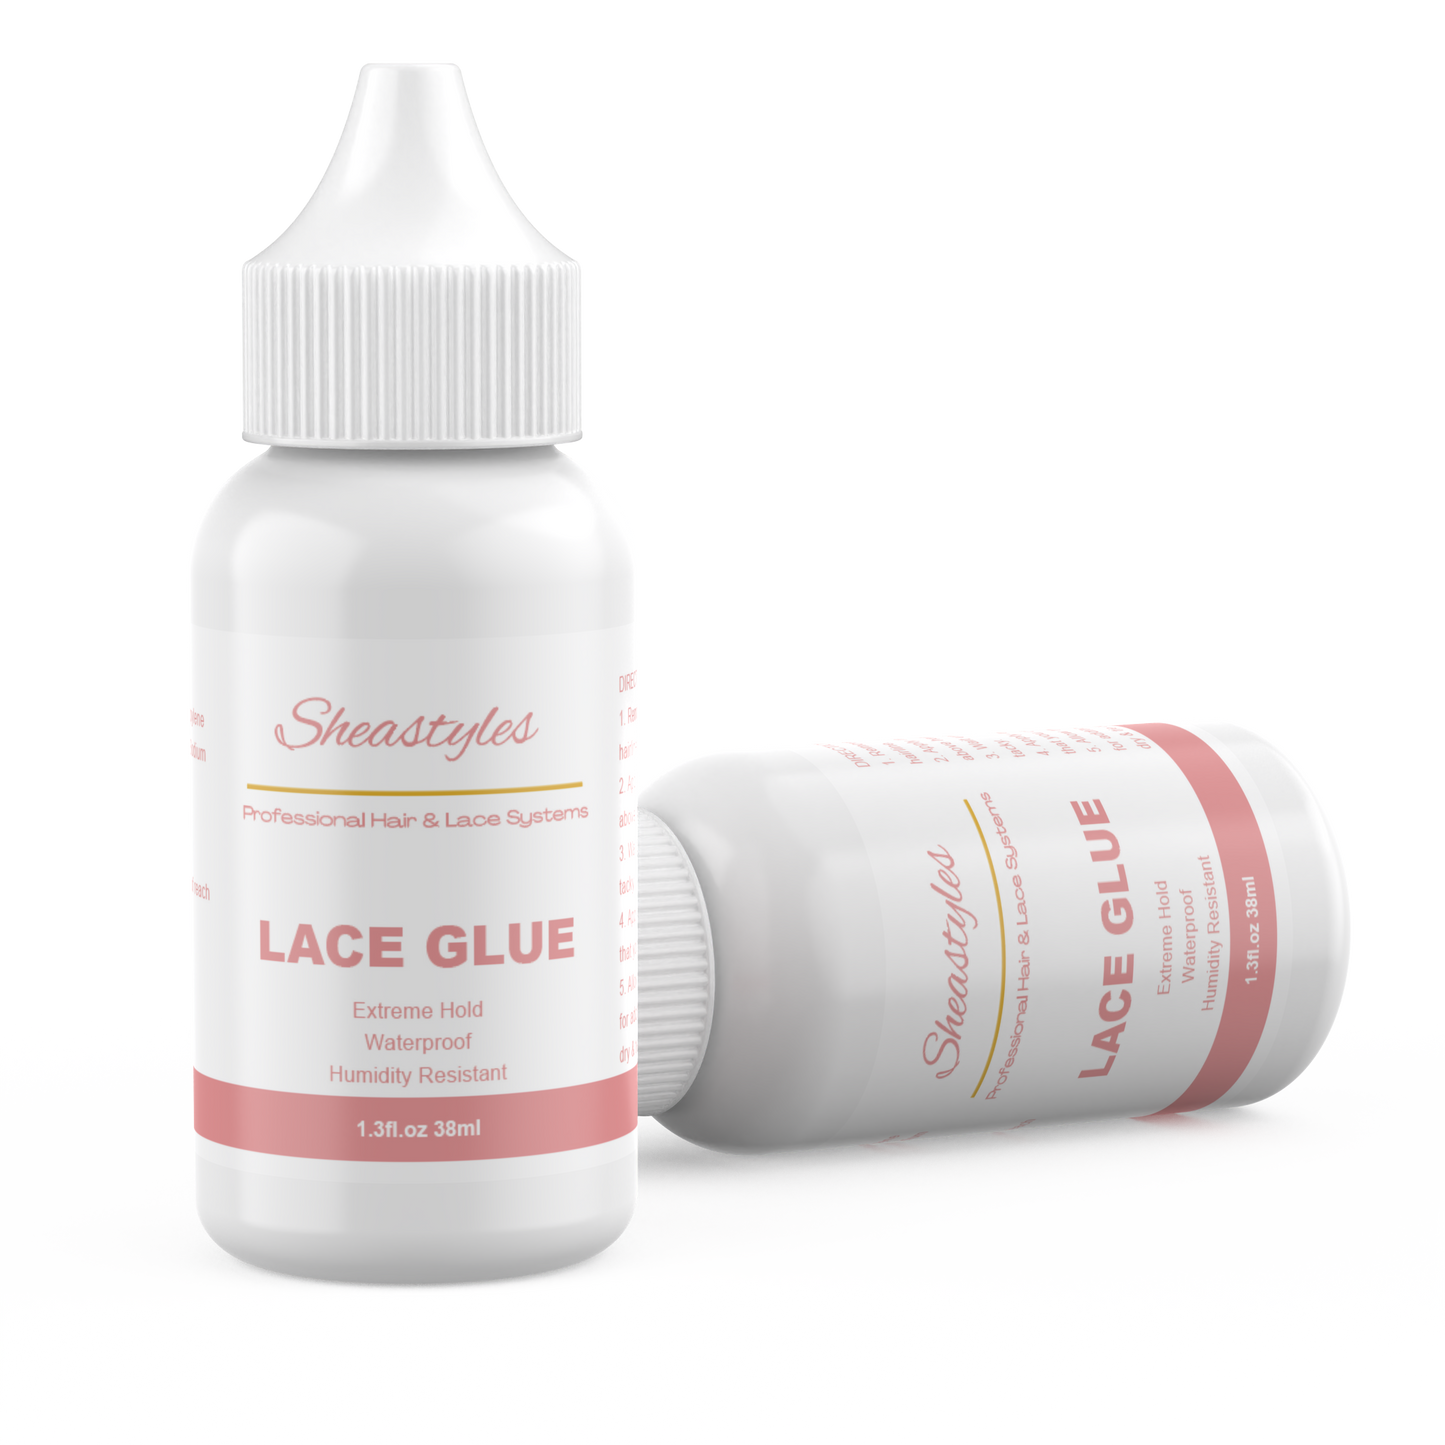 Waterproof lace glue